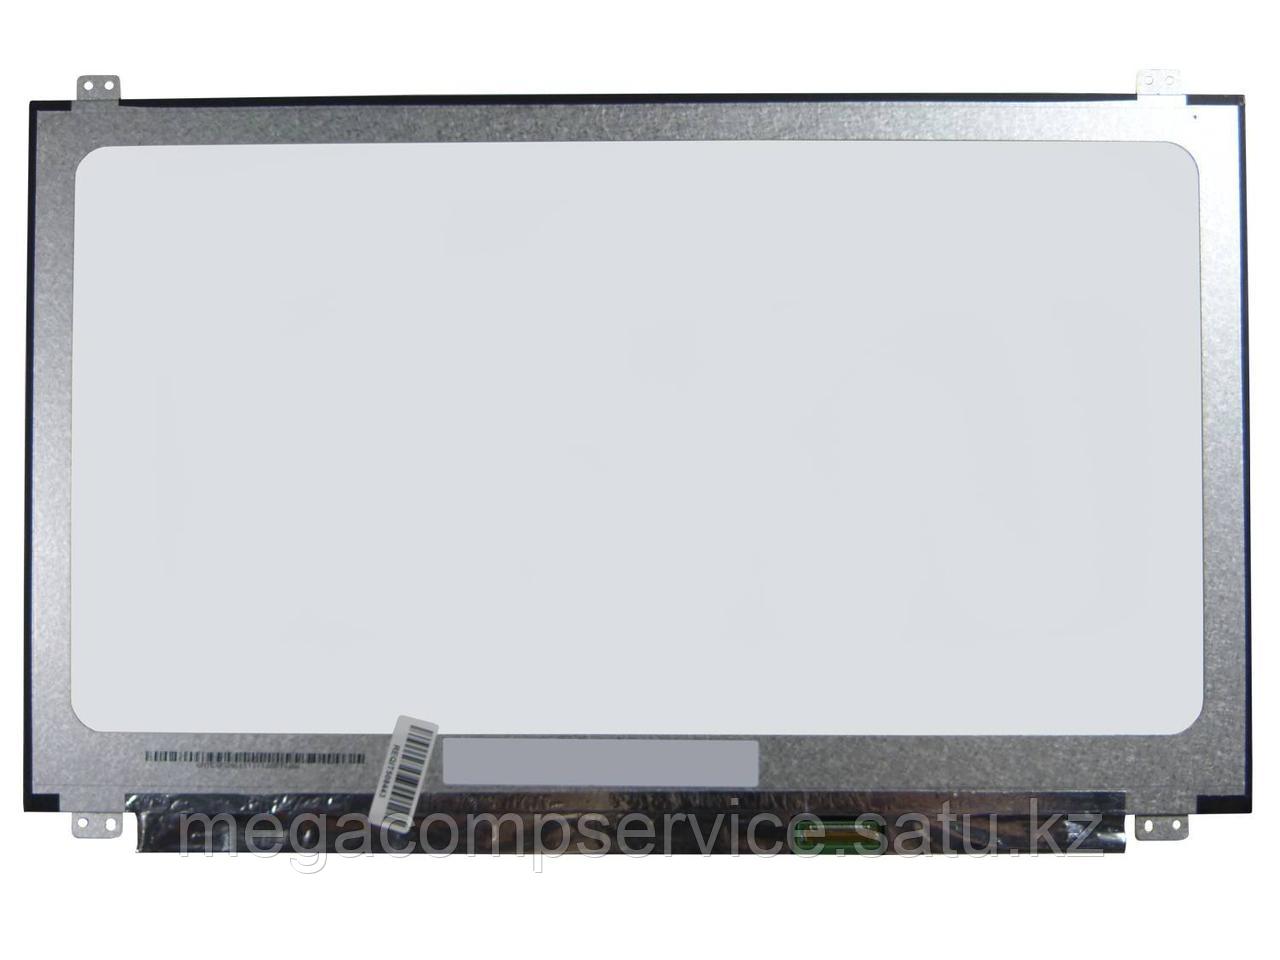 ЖК экран для ноутбука 15.6" BOE, NT156WHM-N45, WXGA 1366x768, LED, 350.66×223.85×3.2 (mm)